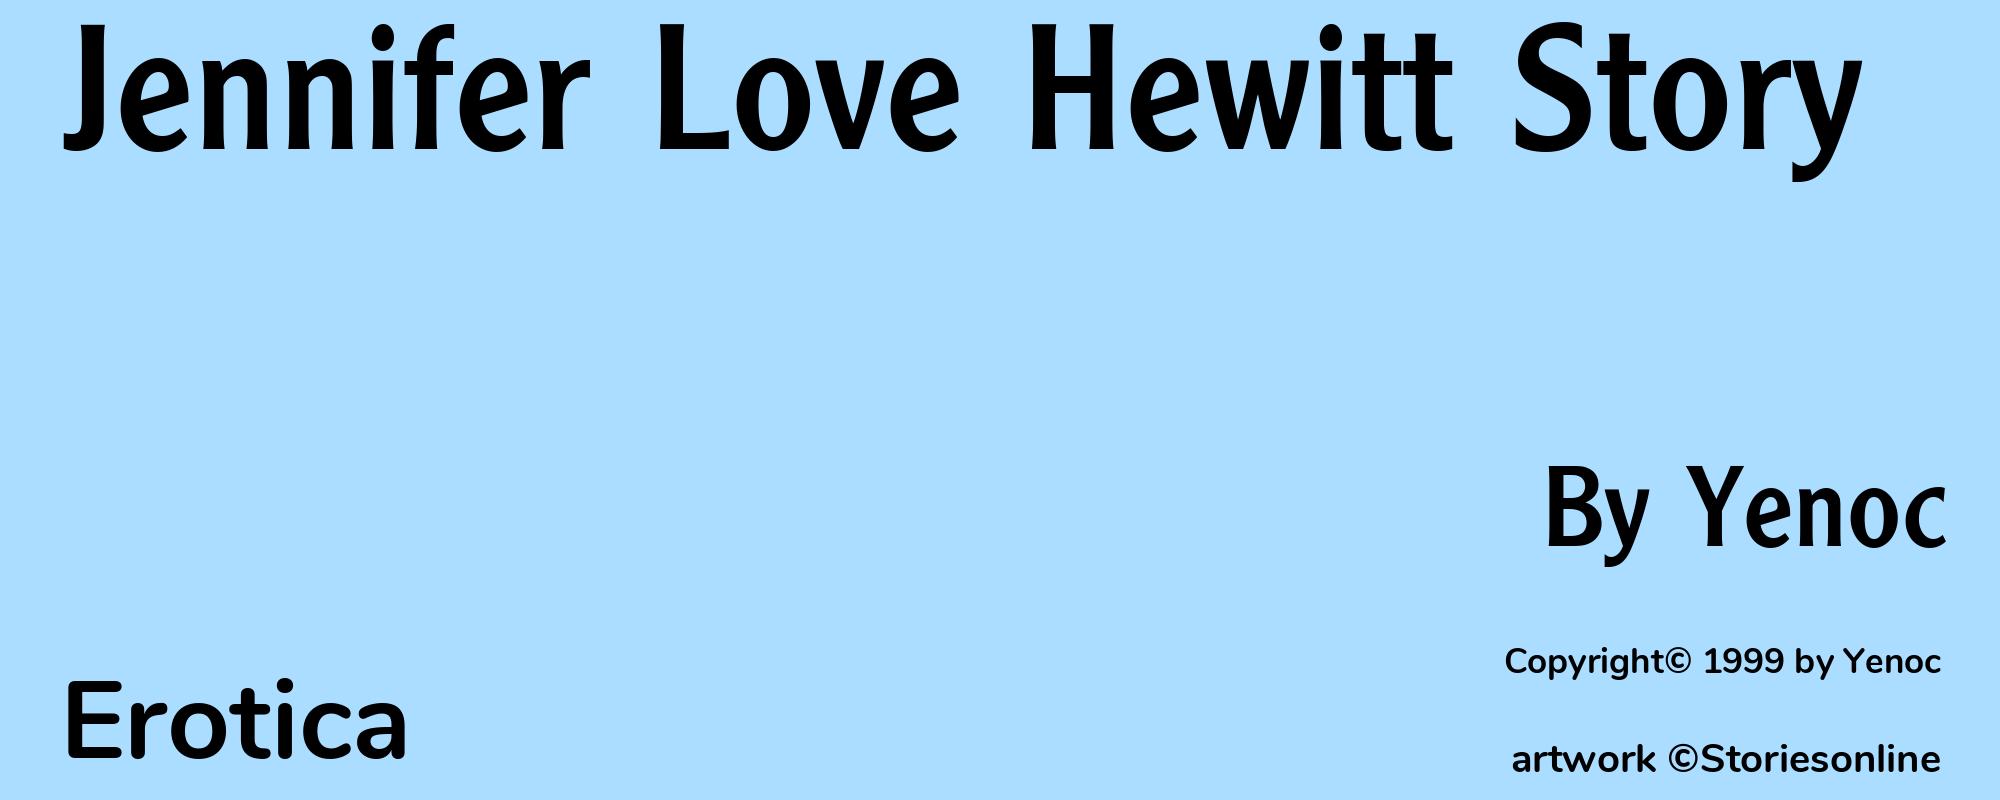 Jennifer Love Hewitt Story - Cover